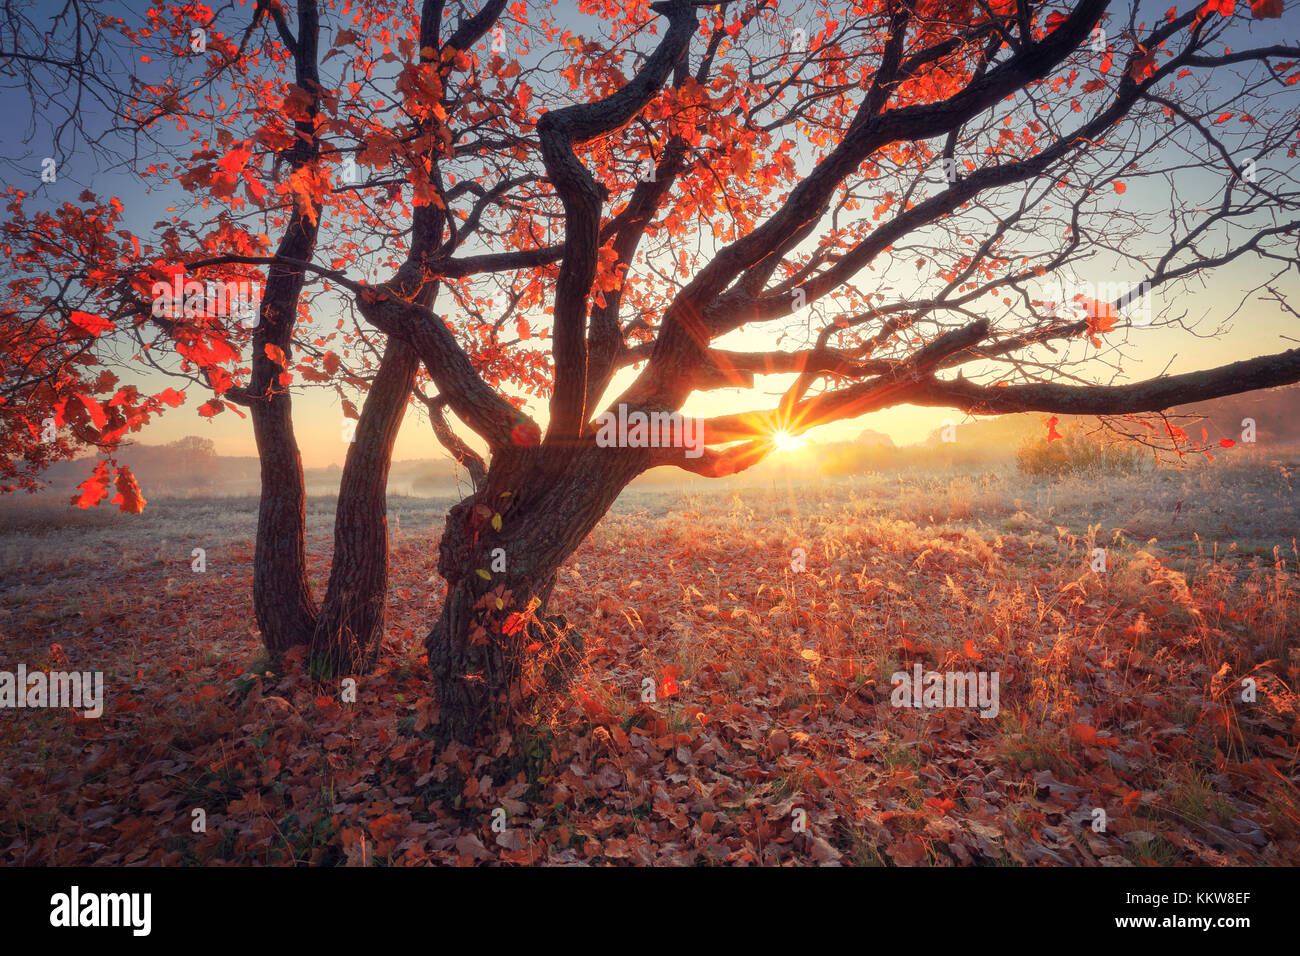 Otoño soleado escena. árbol con hojas rojas iluminadas por el sol naciente. frosty pintoresco paisaje otoñal. Foto de stock